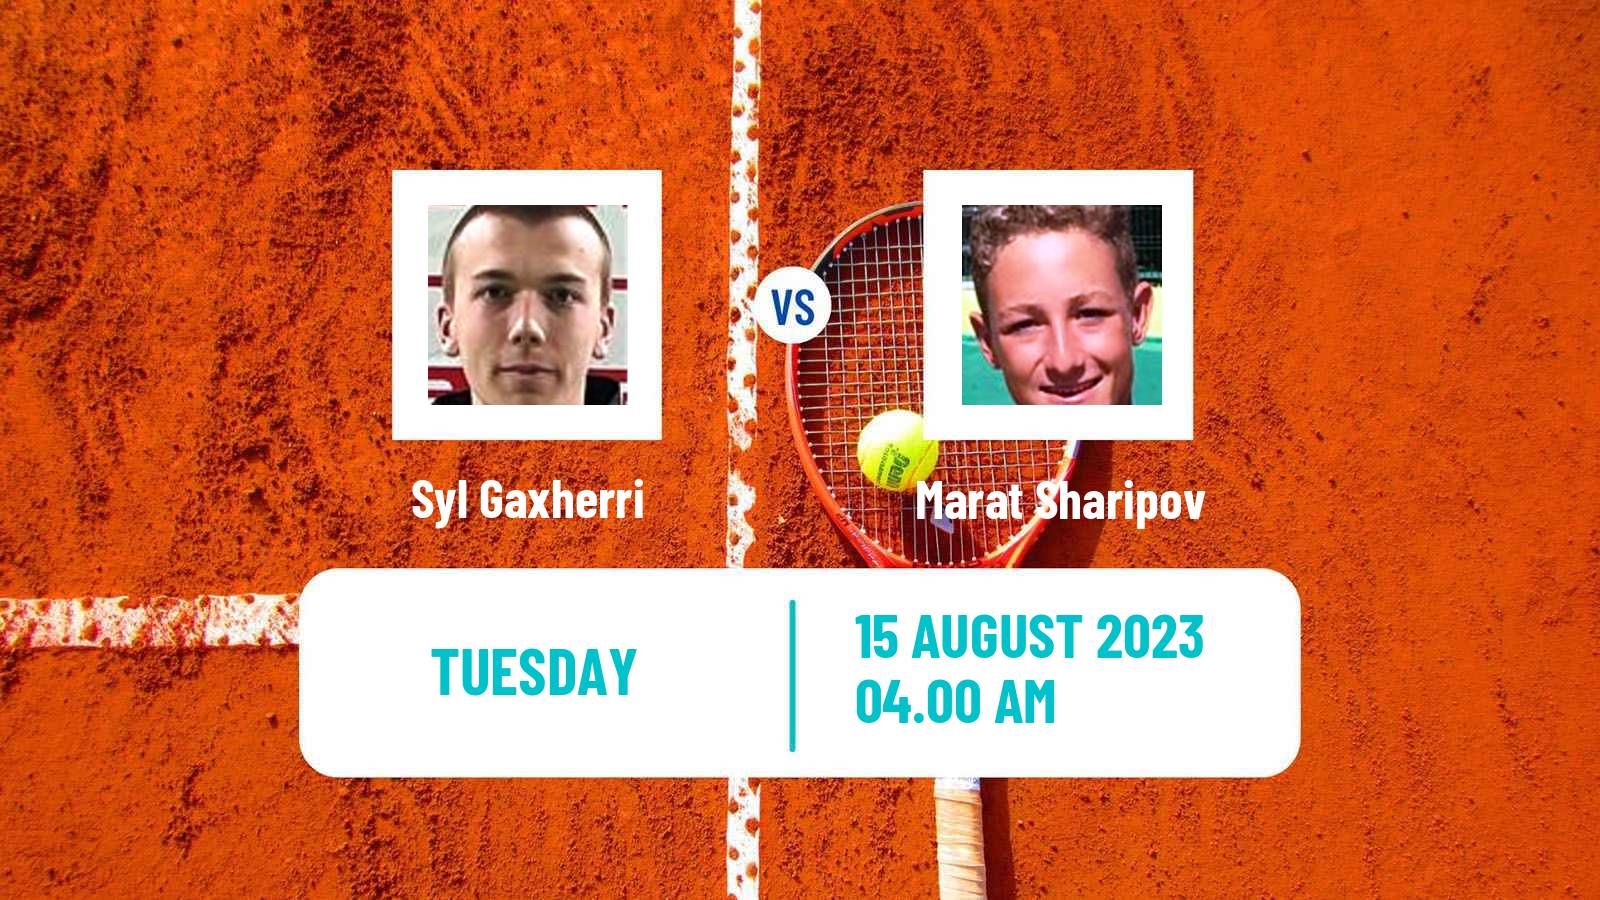 Tennis ITF M15 Kottingbrunn Men Syl Gaxherri - Marat Sharipov